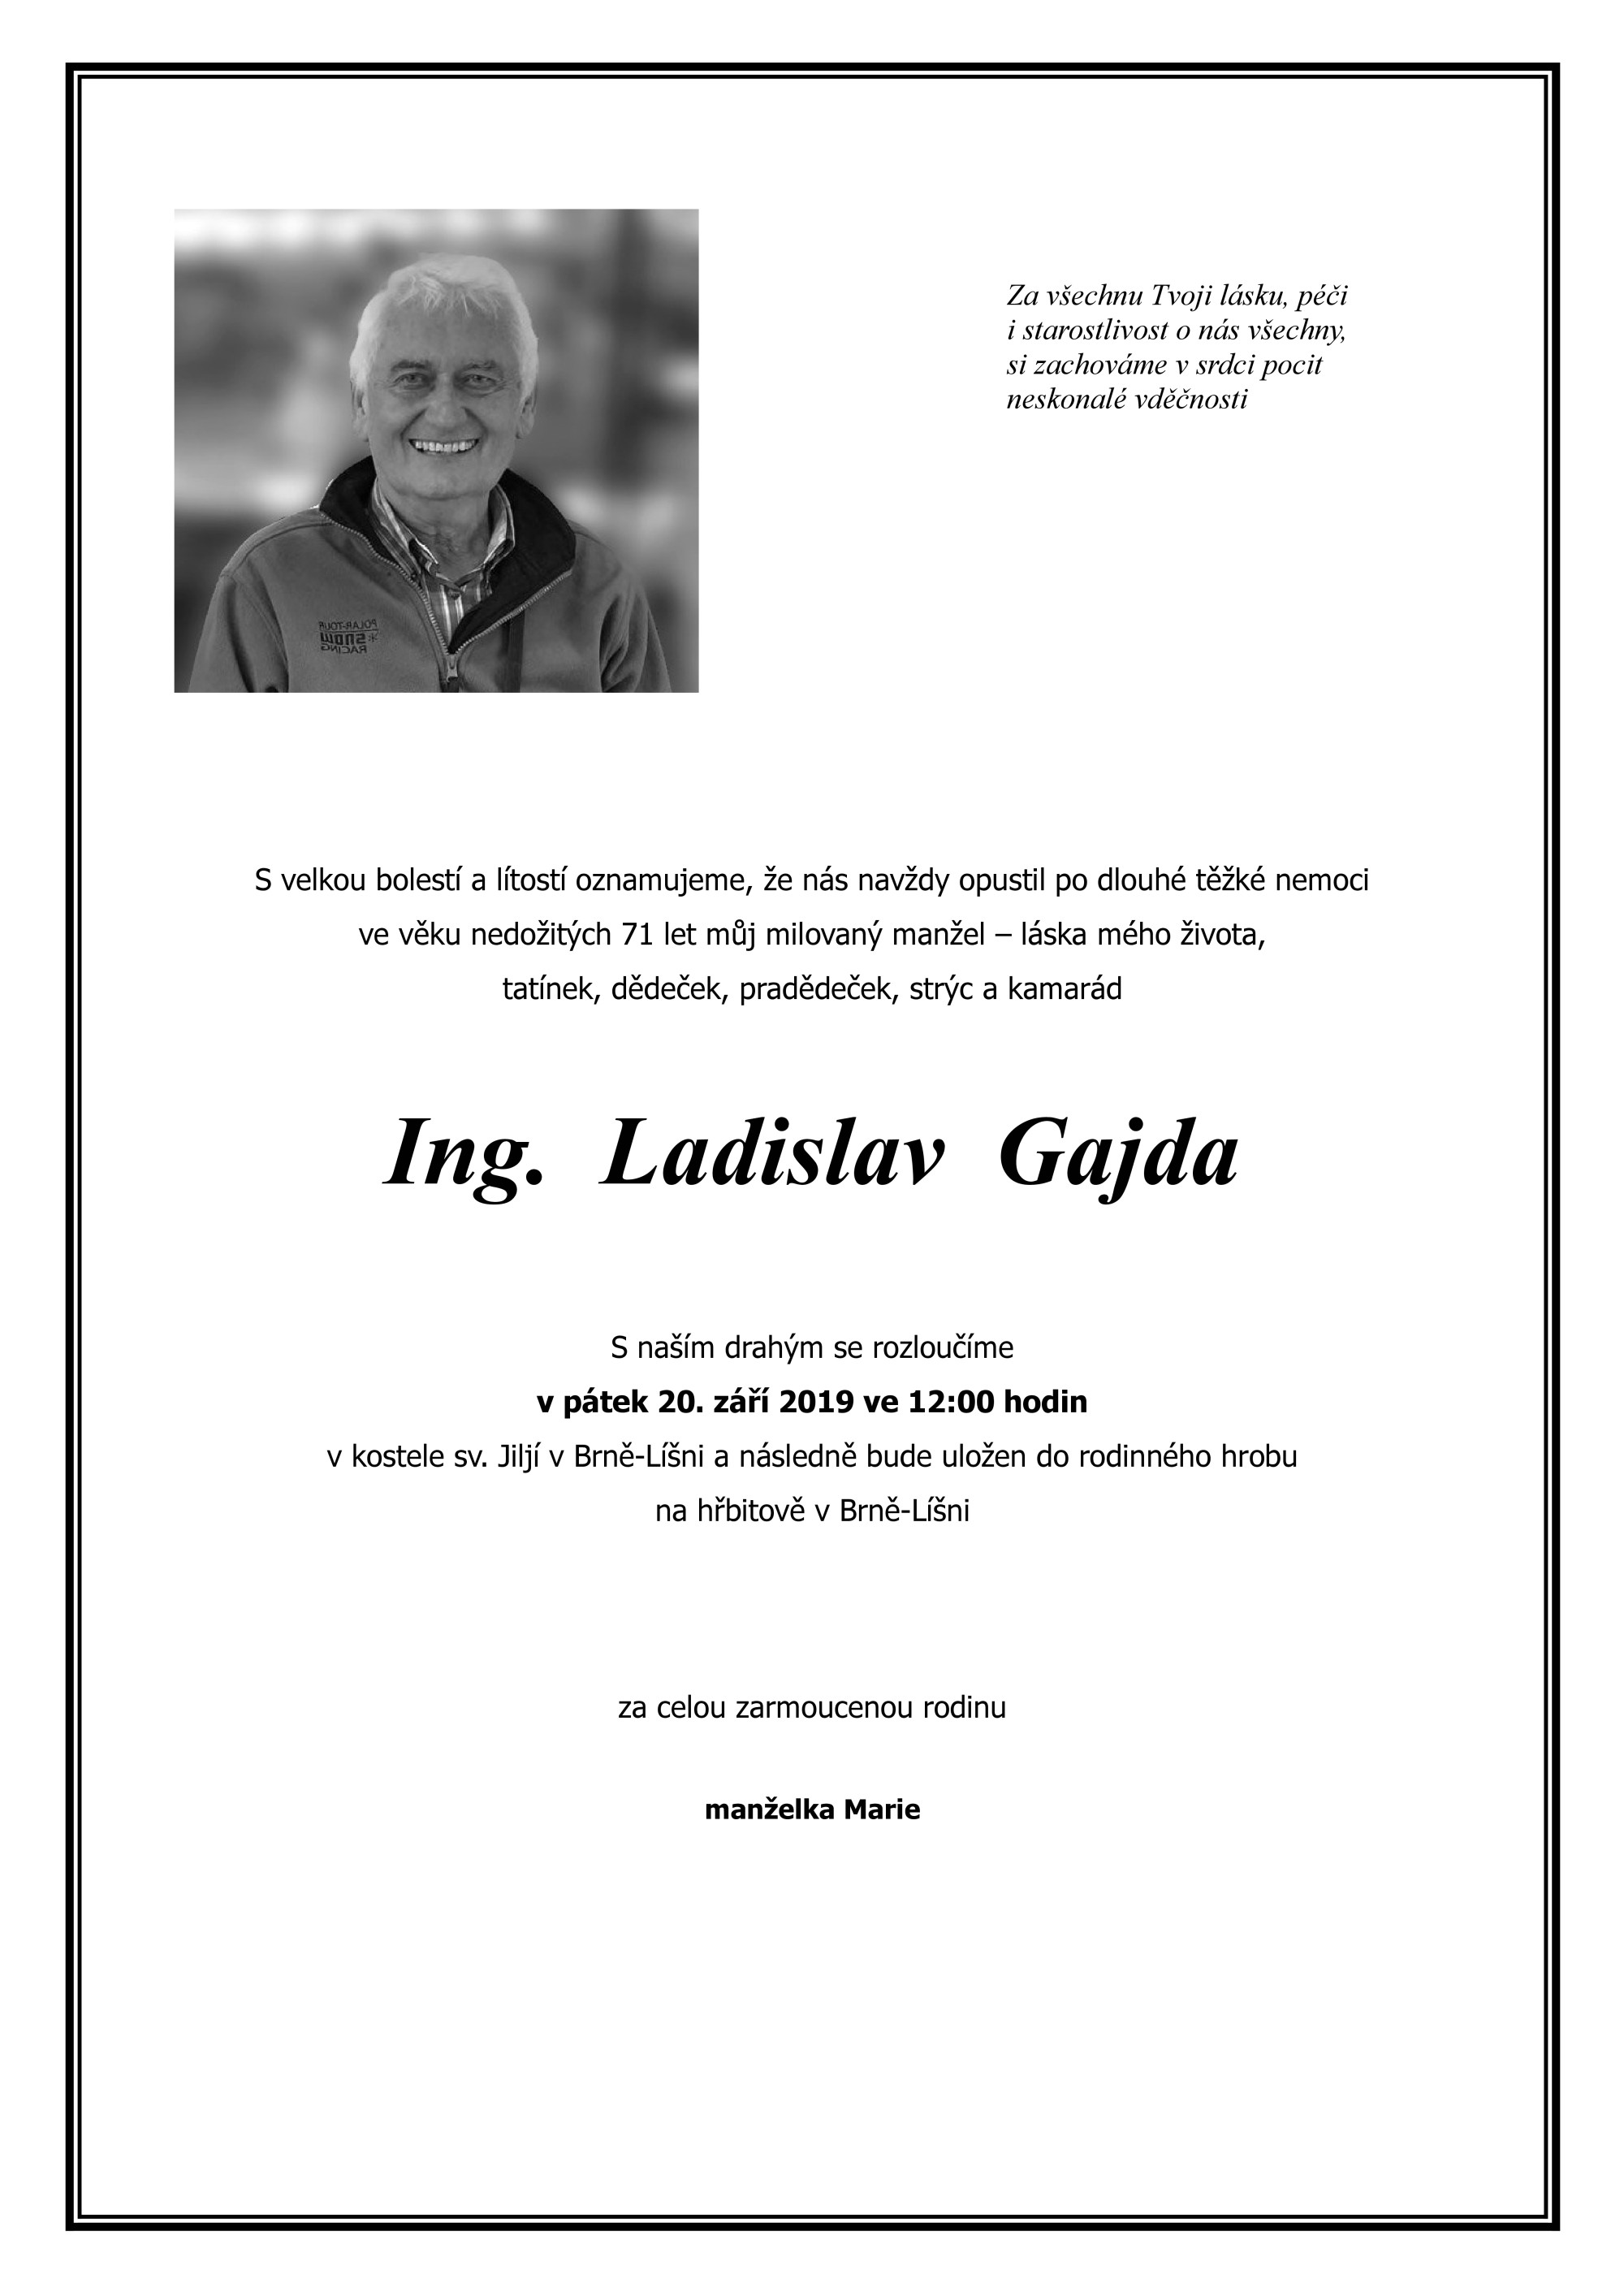 Ing. Ladislav Gajda